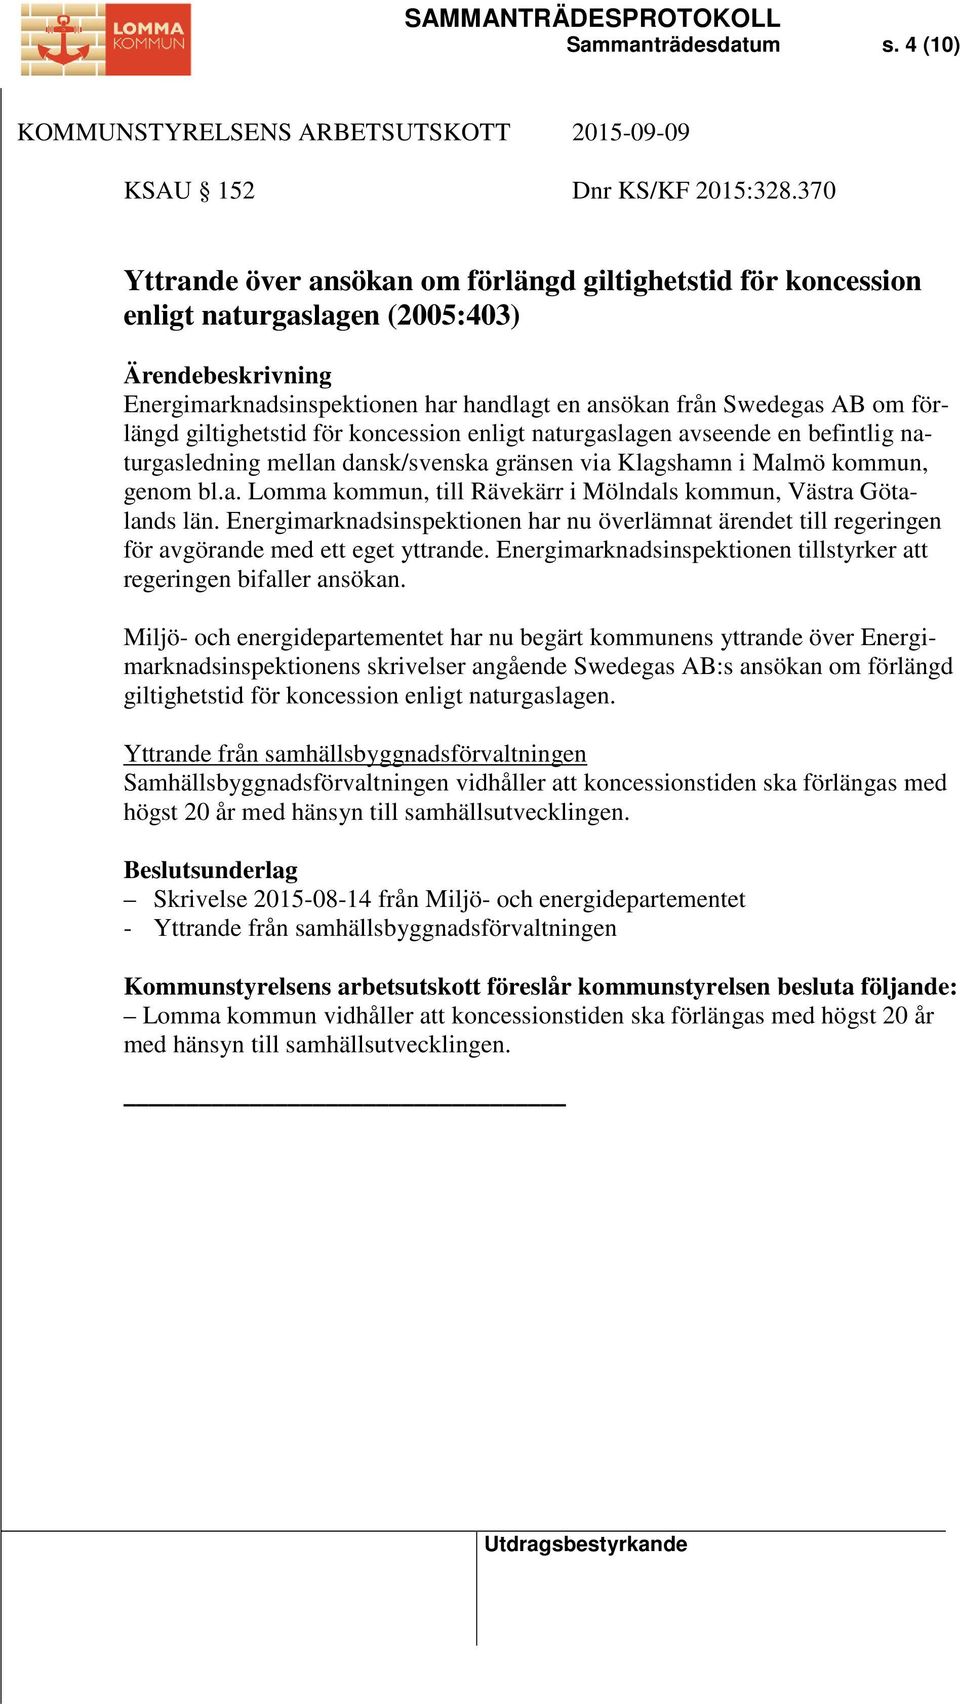 giltighetstid för koncession enligt naturgaslagen avseende en befintlig naturgasledning mellan dansk/svenska gränsen via Klagshamn i Malmö kommun, genom bl.a. Lomma kommun, till Rävekärr i Mölndals kommun, Västra Götalands län.